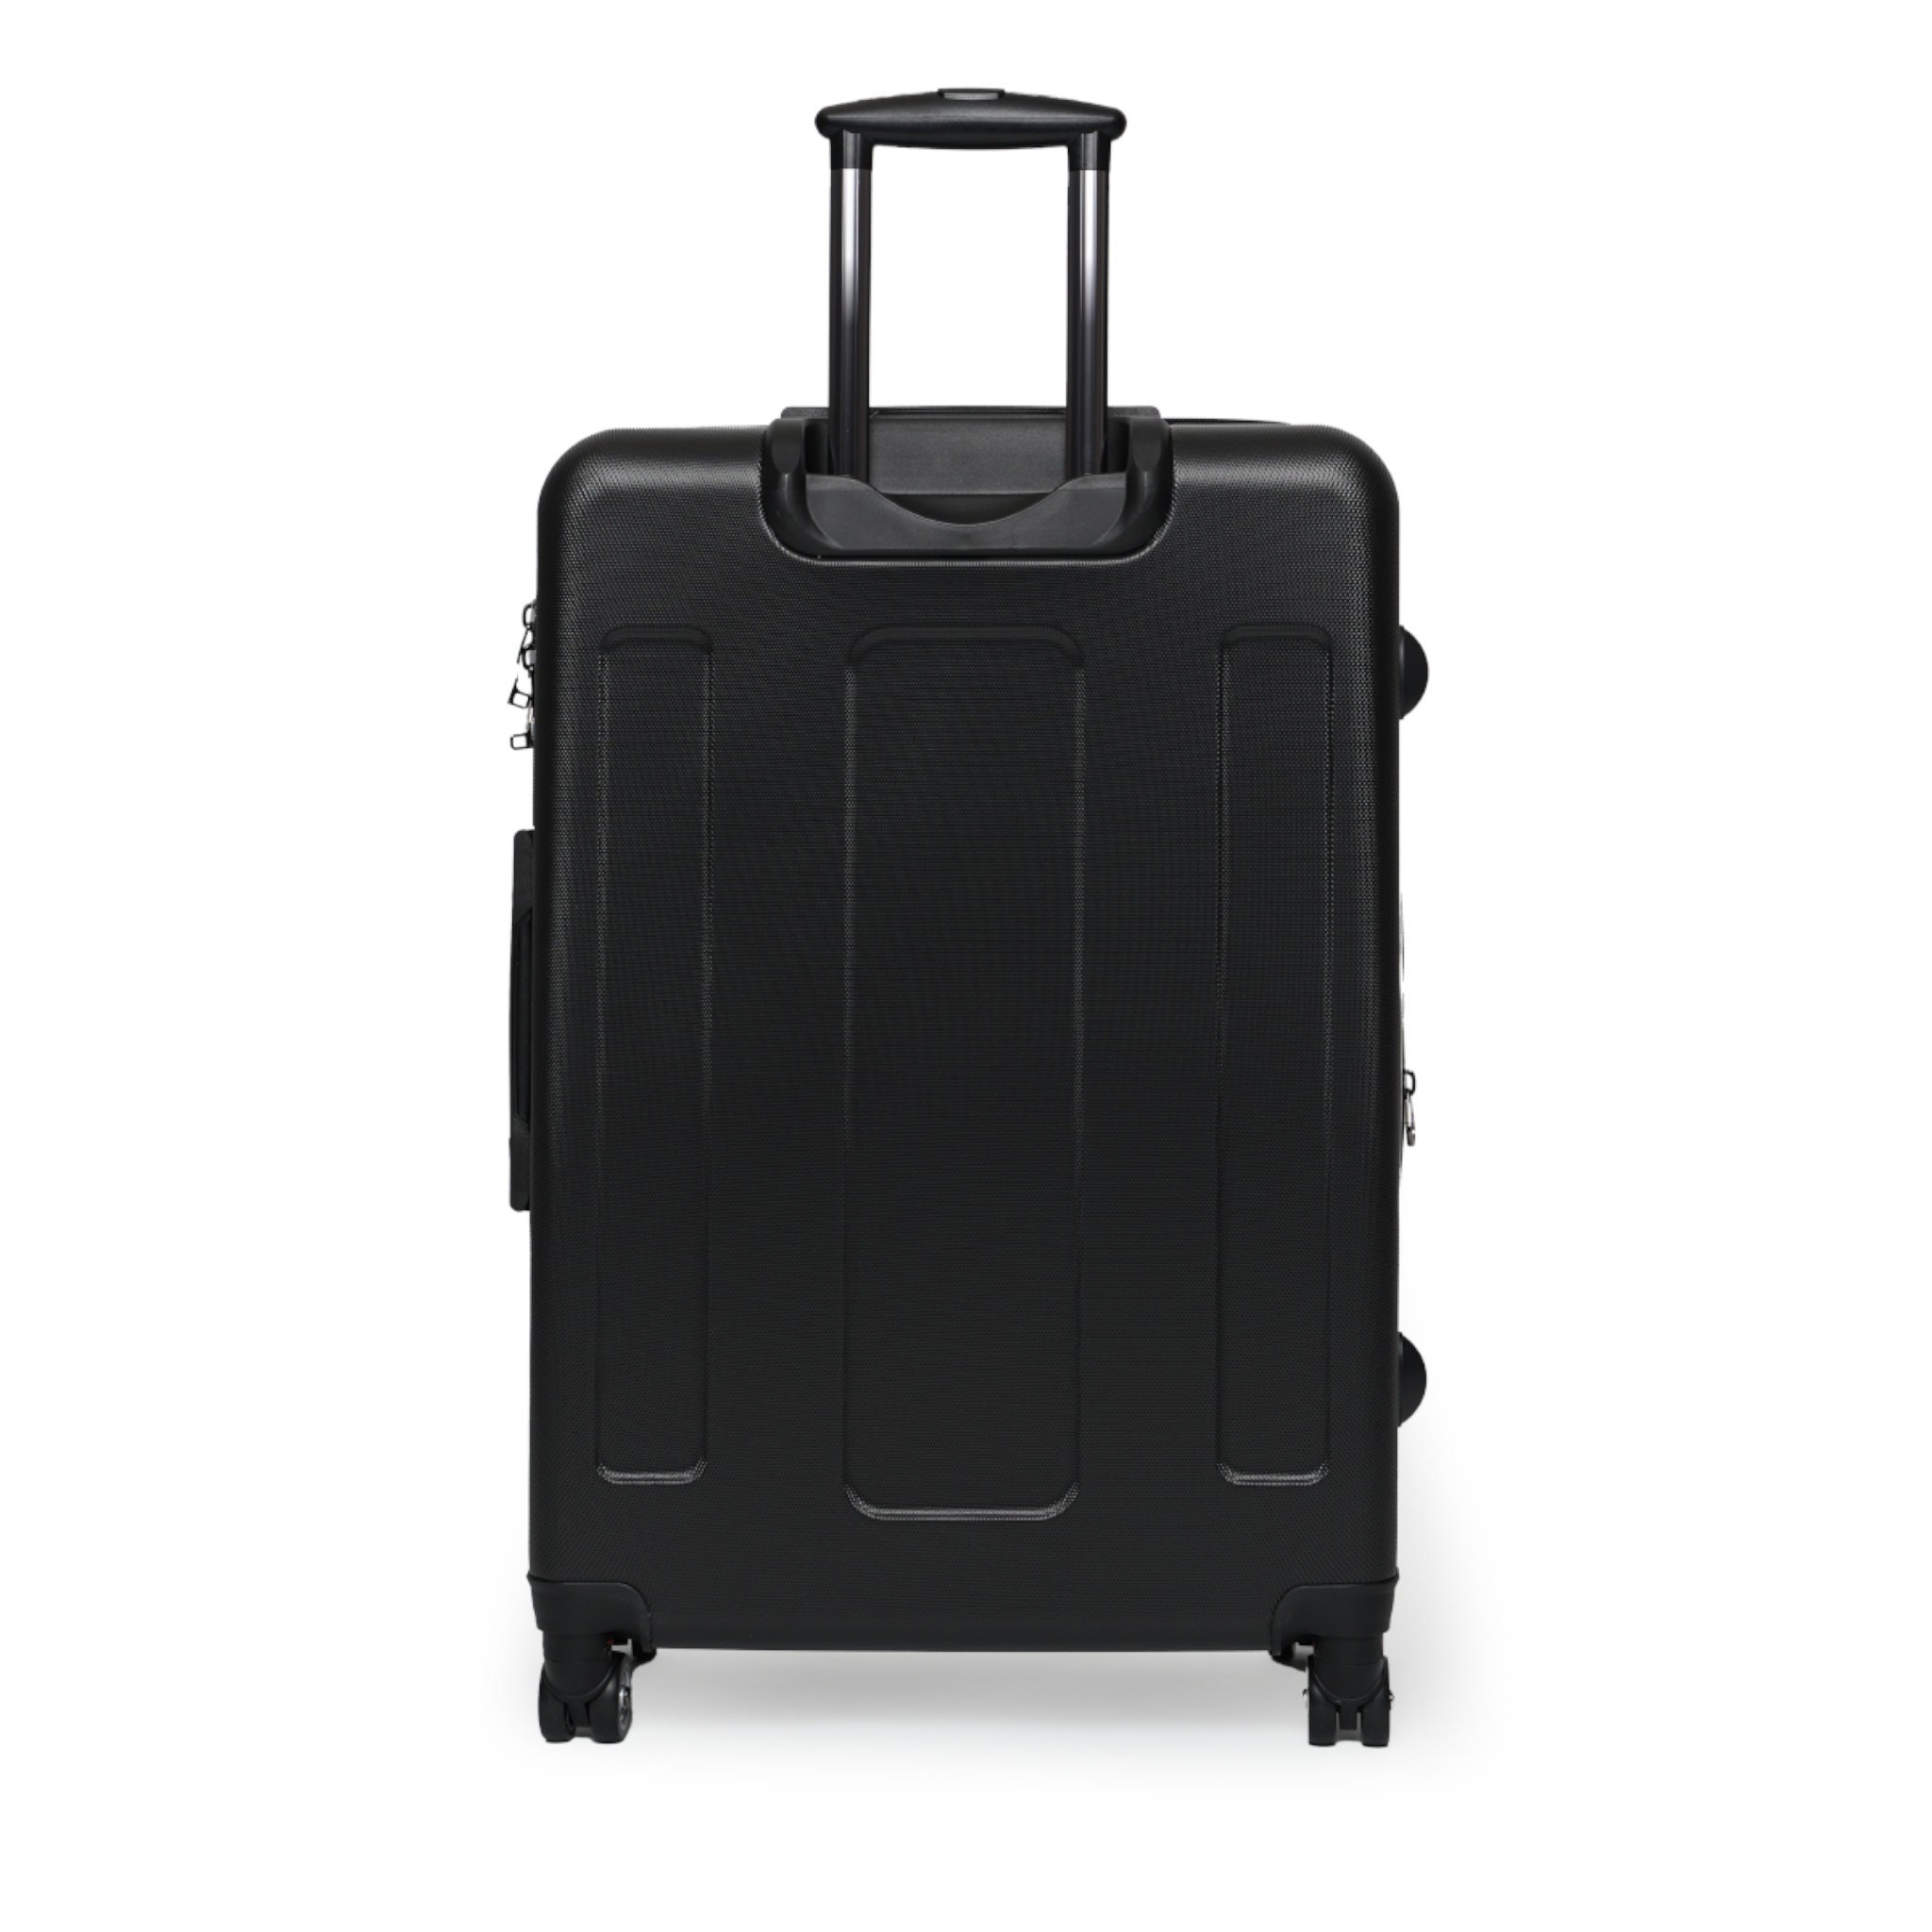 Orange Alligator Style Personalized Suitcase Personalized Large Cabin business Luggage